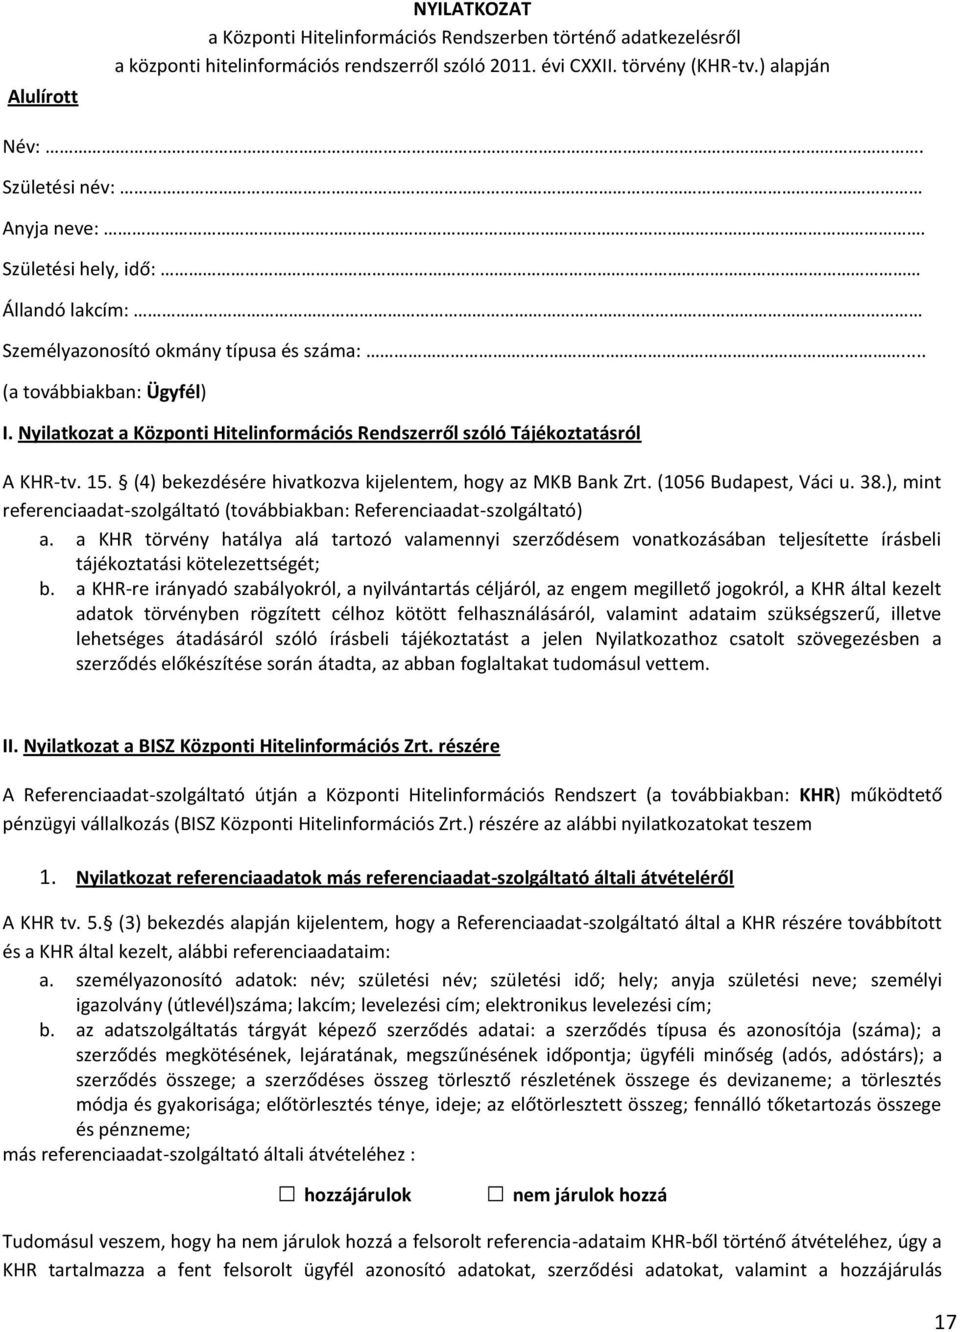 Nyilatkozat a Központi Hitelinformációs Rendszerről szóló Tájékoztatásról A KHR-tv. 15. (4) bekezdésére hivatkozva kijelentem, hogy az MKB Bank Zrt. (1056 Budapest, Váci u. 38.